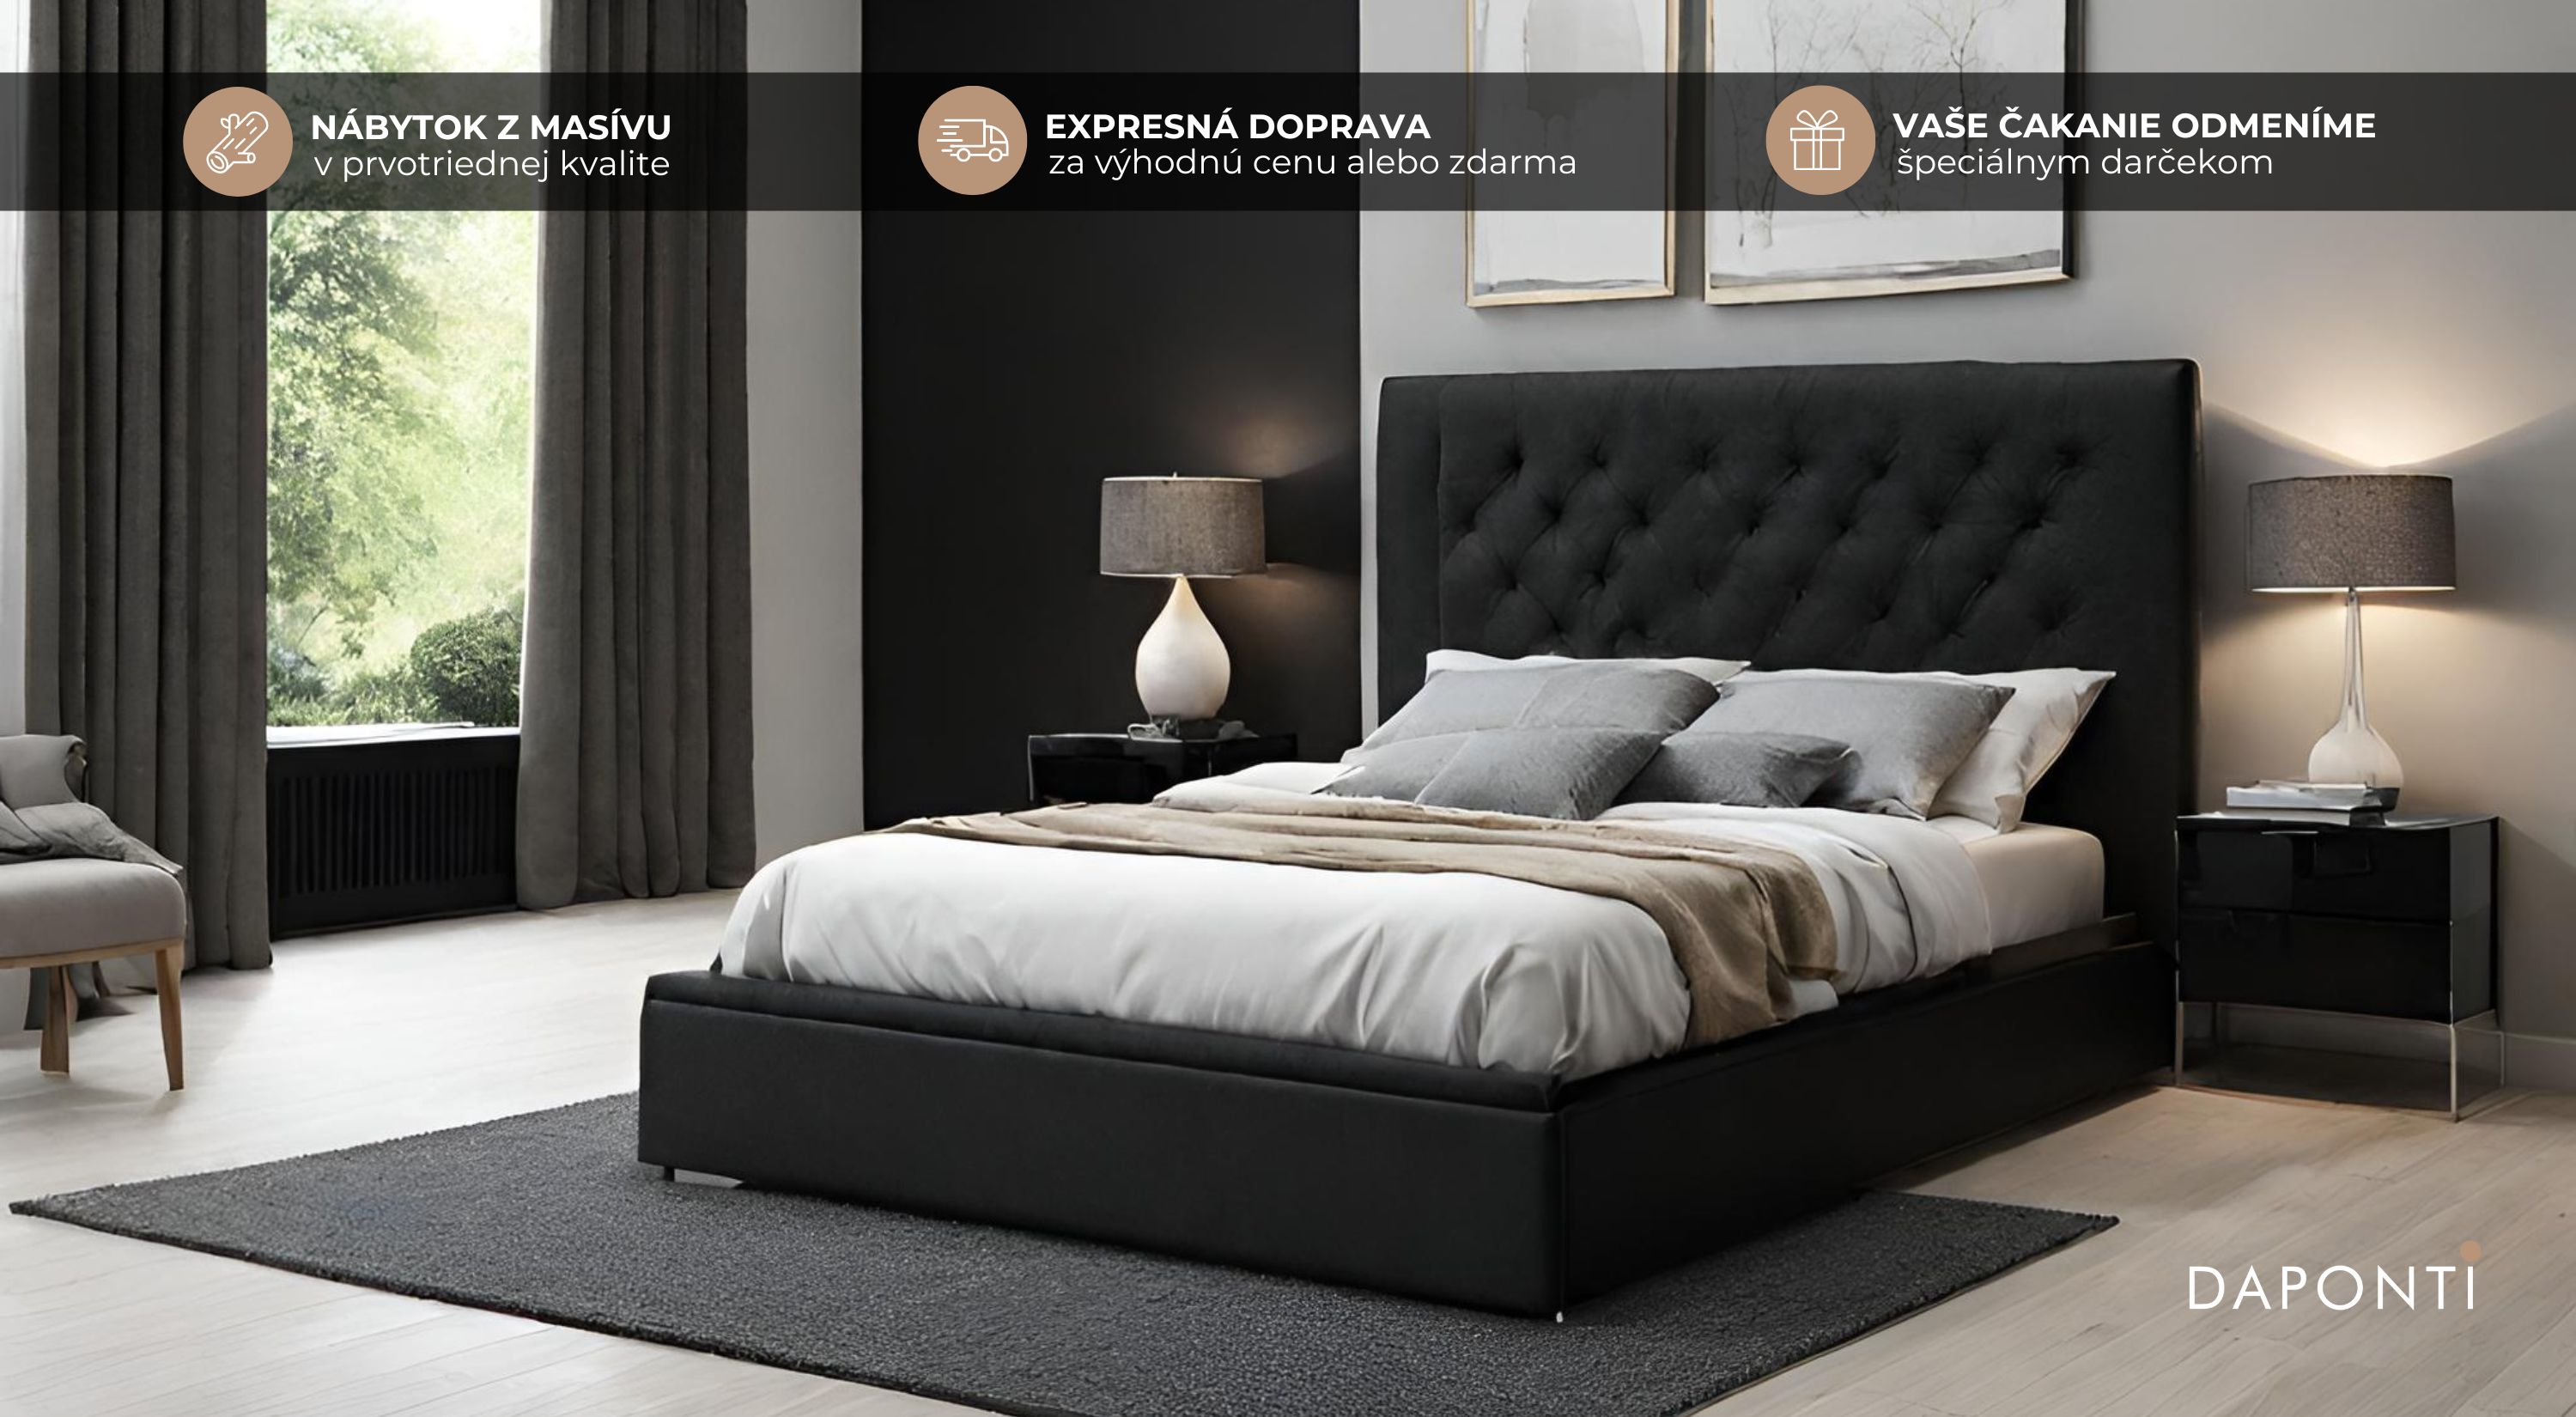 Čalúnená manželská posteľ čiernej farby v tradičnom rozmere 180x200 v prostredí modernej spálne ladenej do sivých odtieňov.